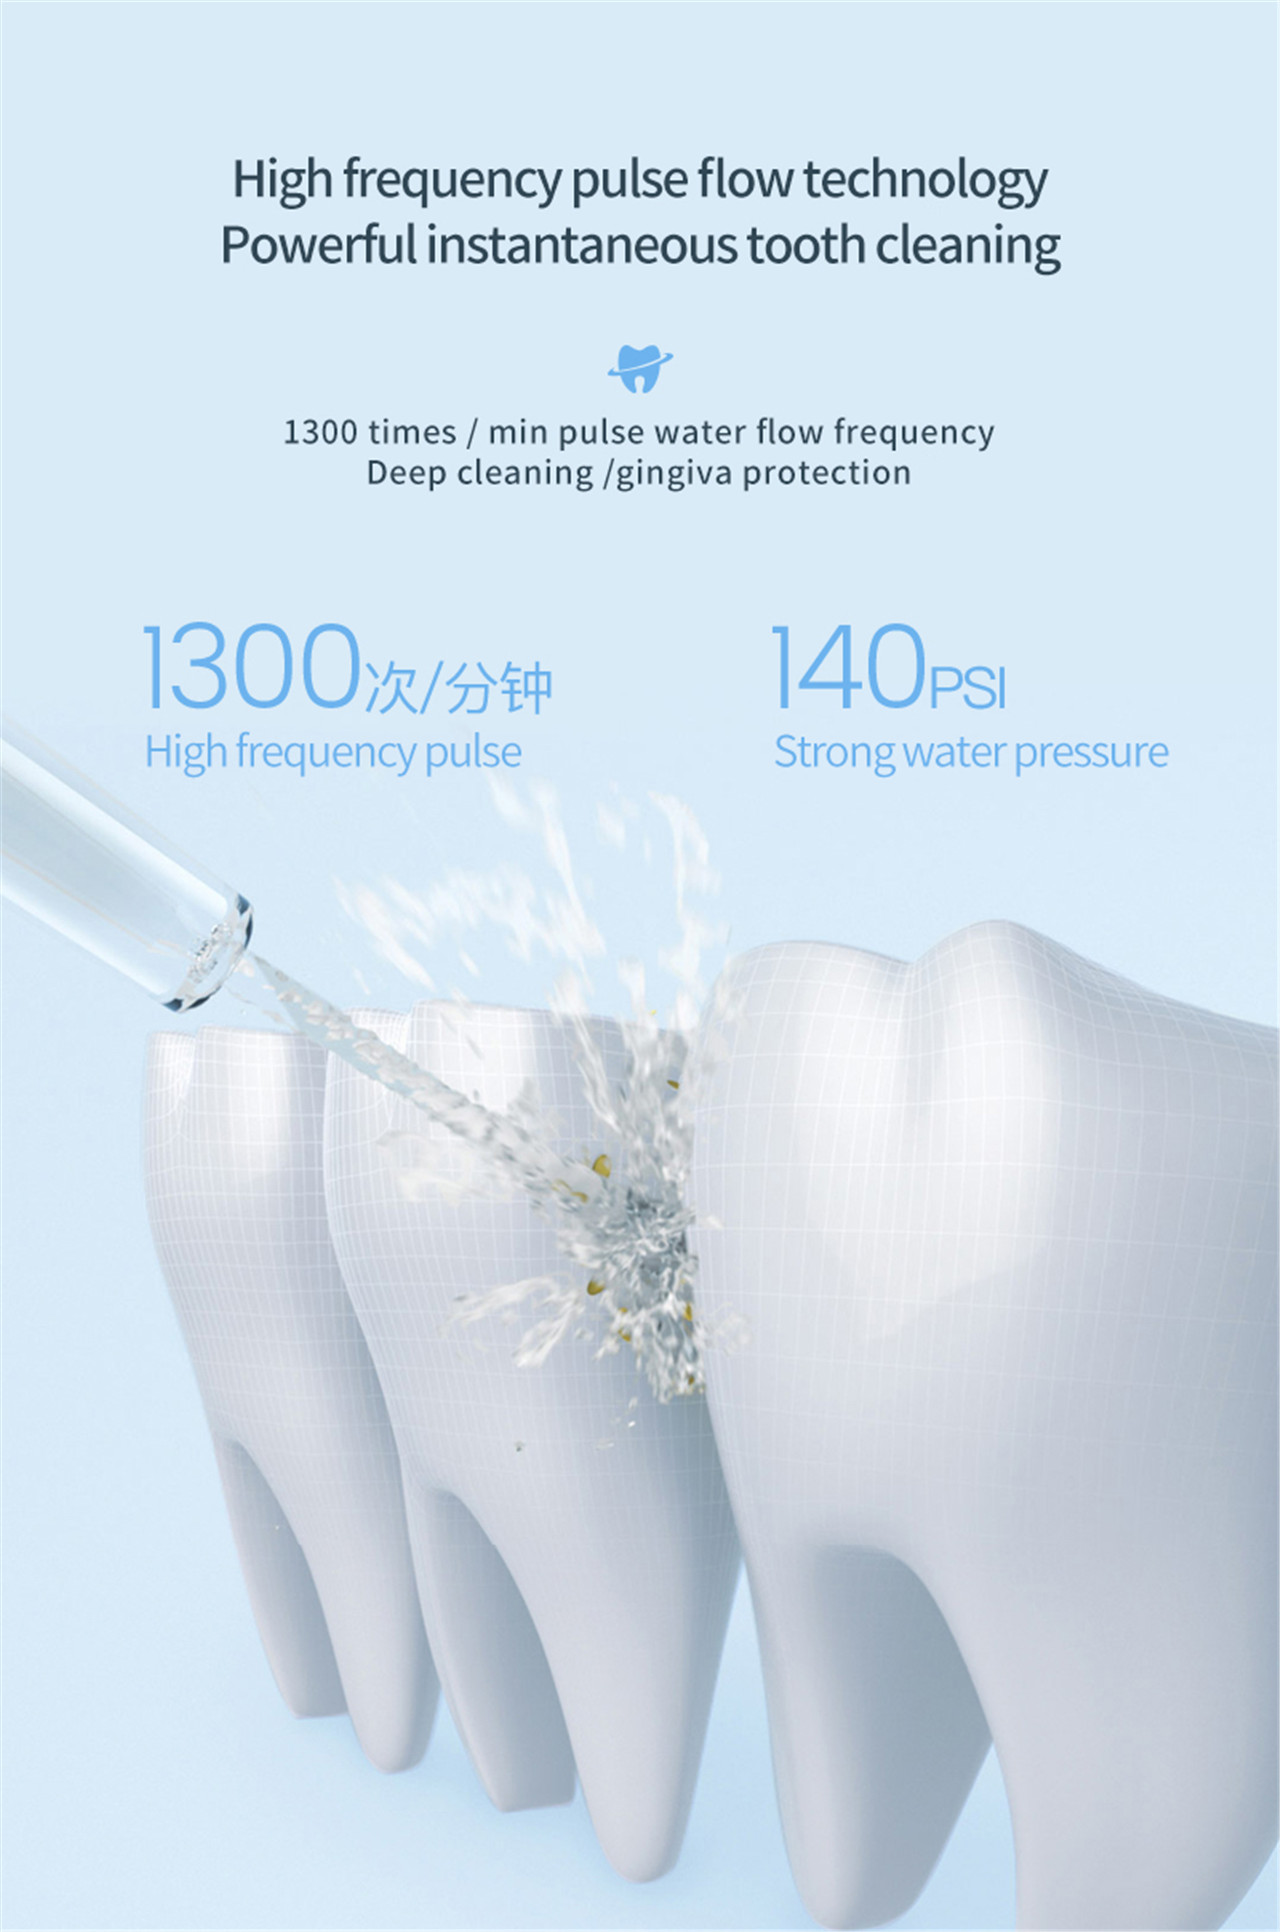 OLED-skerm mondbesproeier waterplukker vir tande bleek (3)